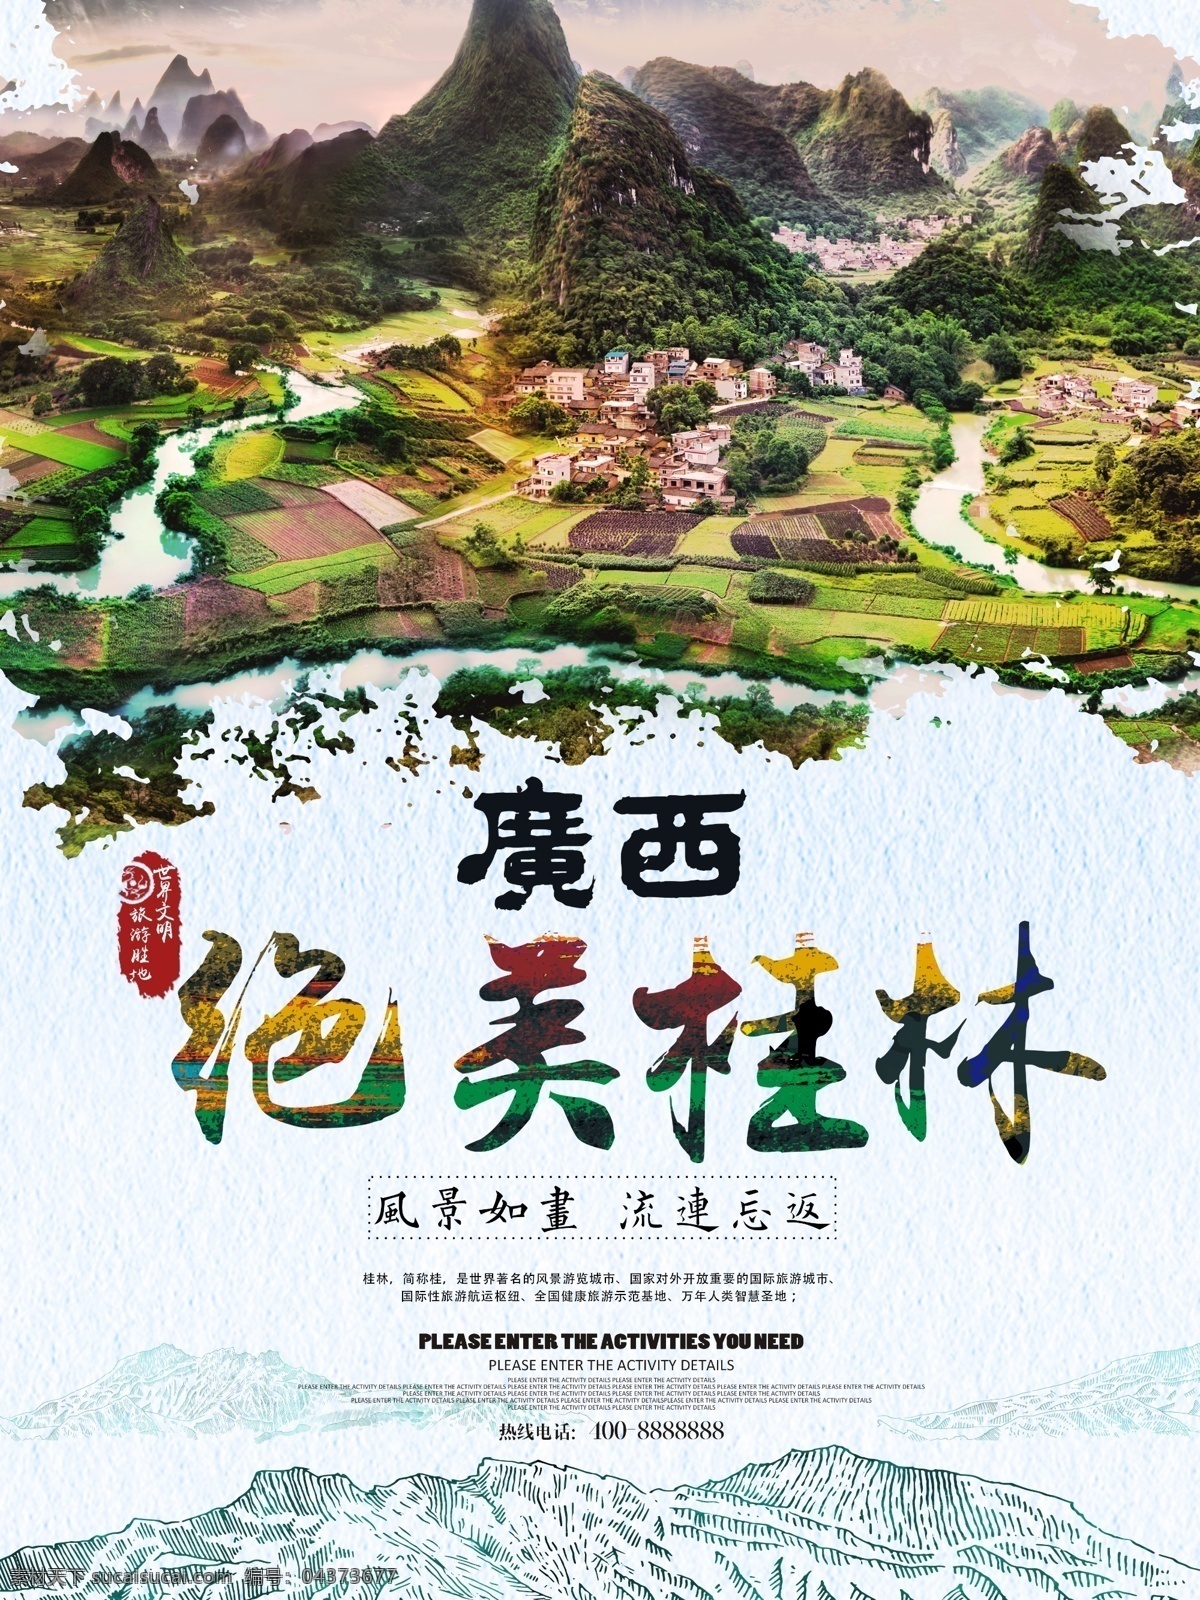 美丽 广西 桂林旅游 海报 免费素材 平面素材 海报模板 广西旅游 桂林 山水 甲天下 广西桂林